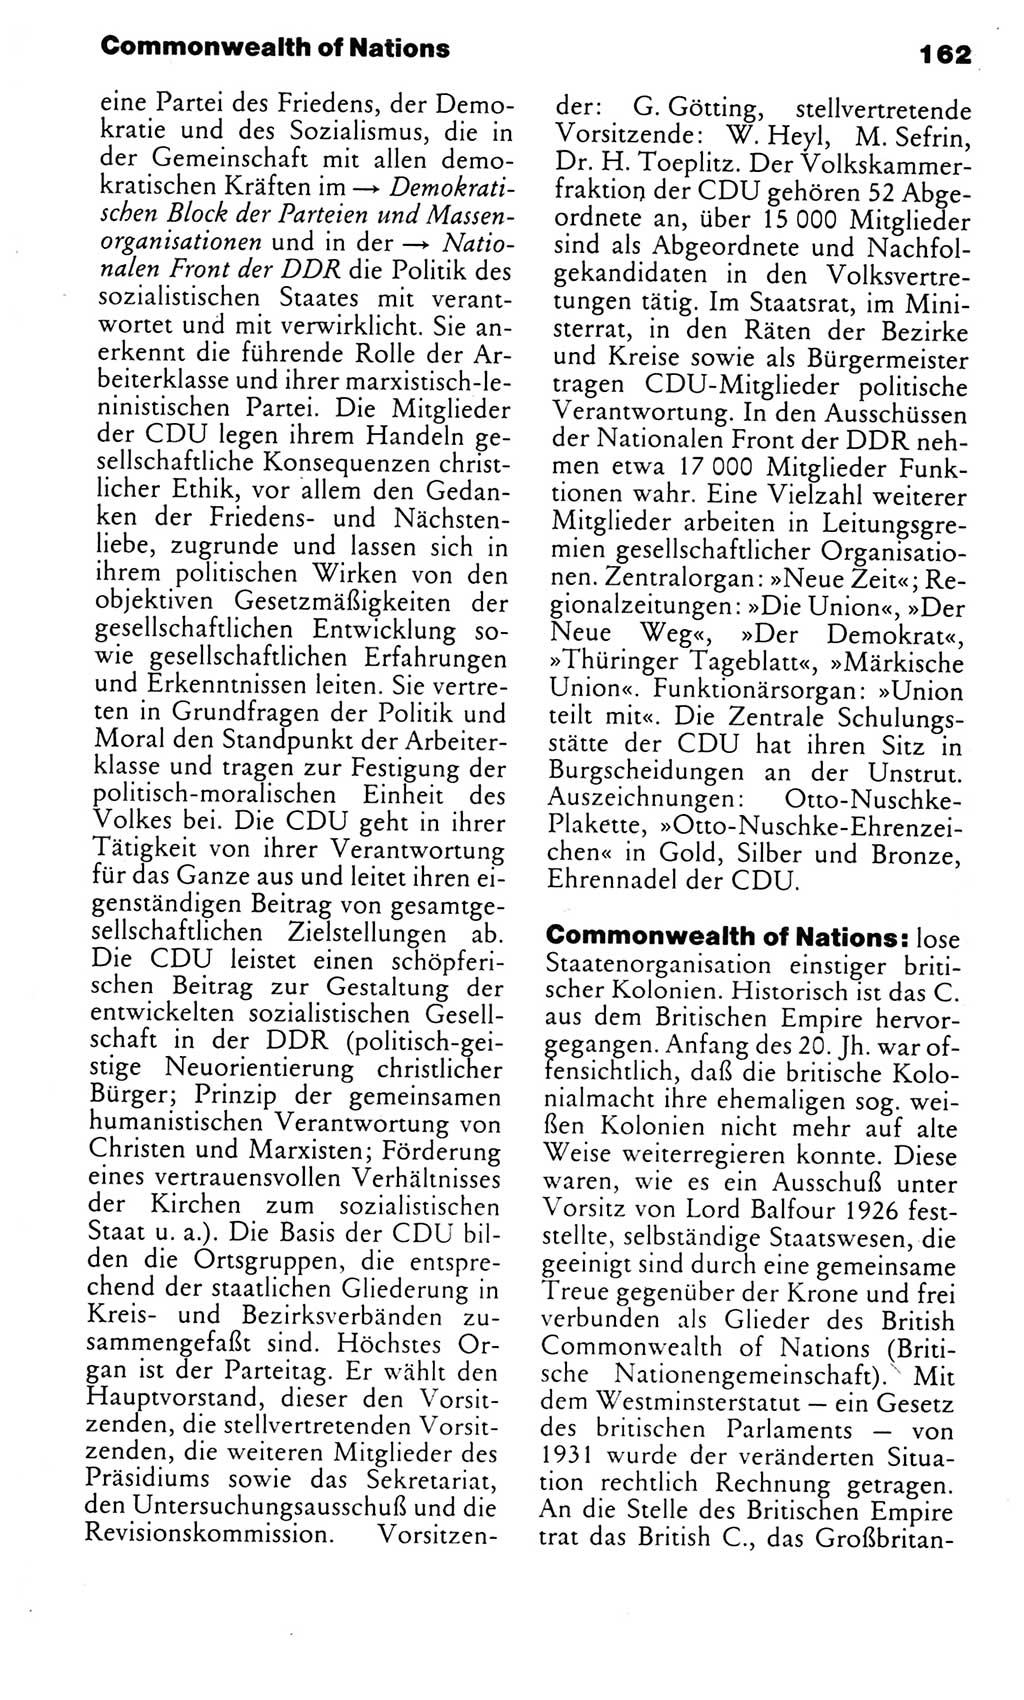 Kleines politisches Wörterbuch [Deutsche Demokratische Republik (DDR)] 1985, Seite 162 (Kl. pol. Wb. DDR 1985, S. 162)